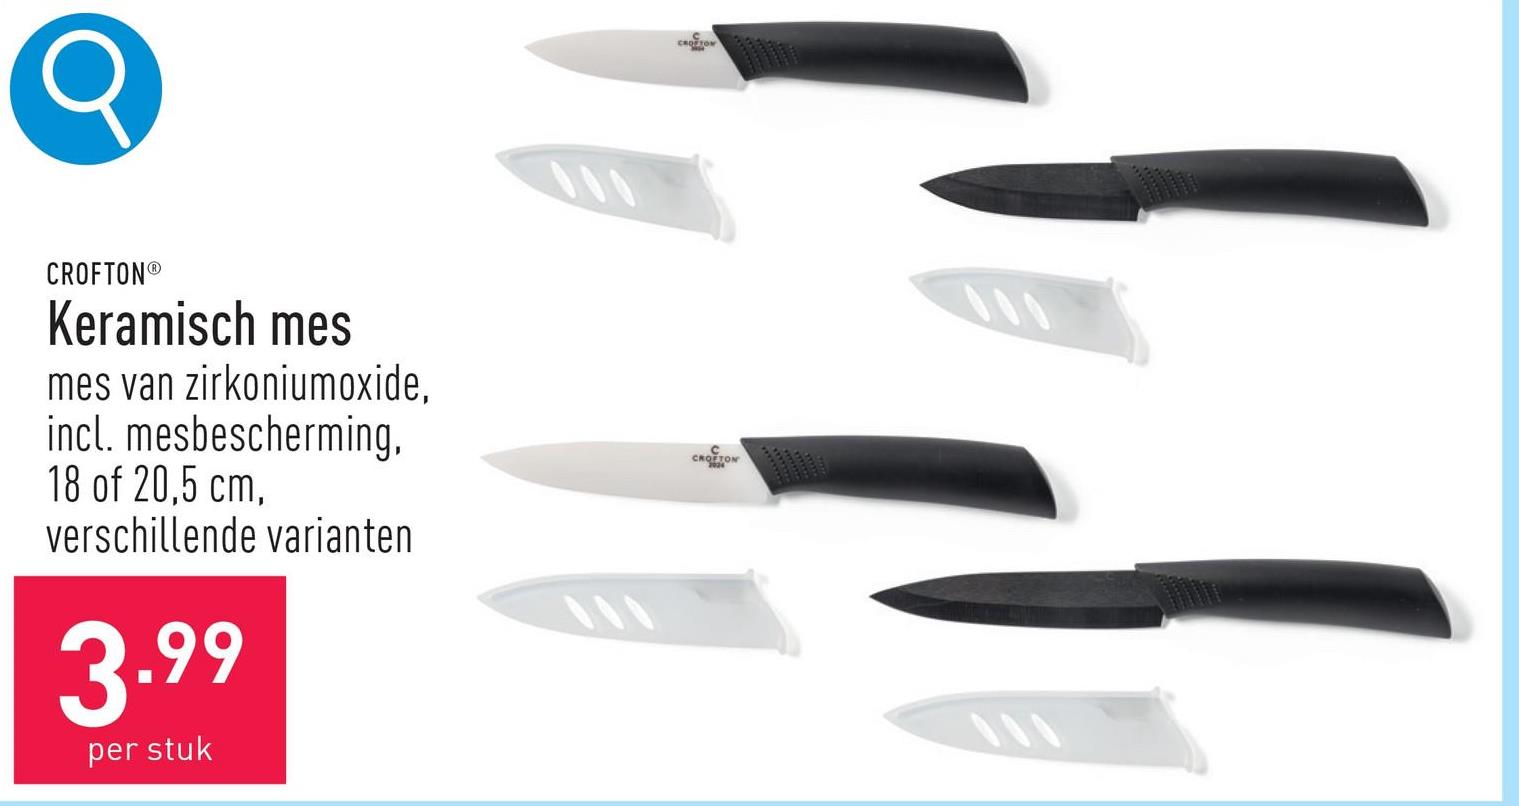 Keramisch mes mes van zirkoniumoxide, incl. mesbescherming, keuze uit mes van 18 en mes van 20,5 cm, keuze uit verschillende varianten